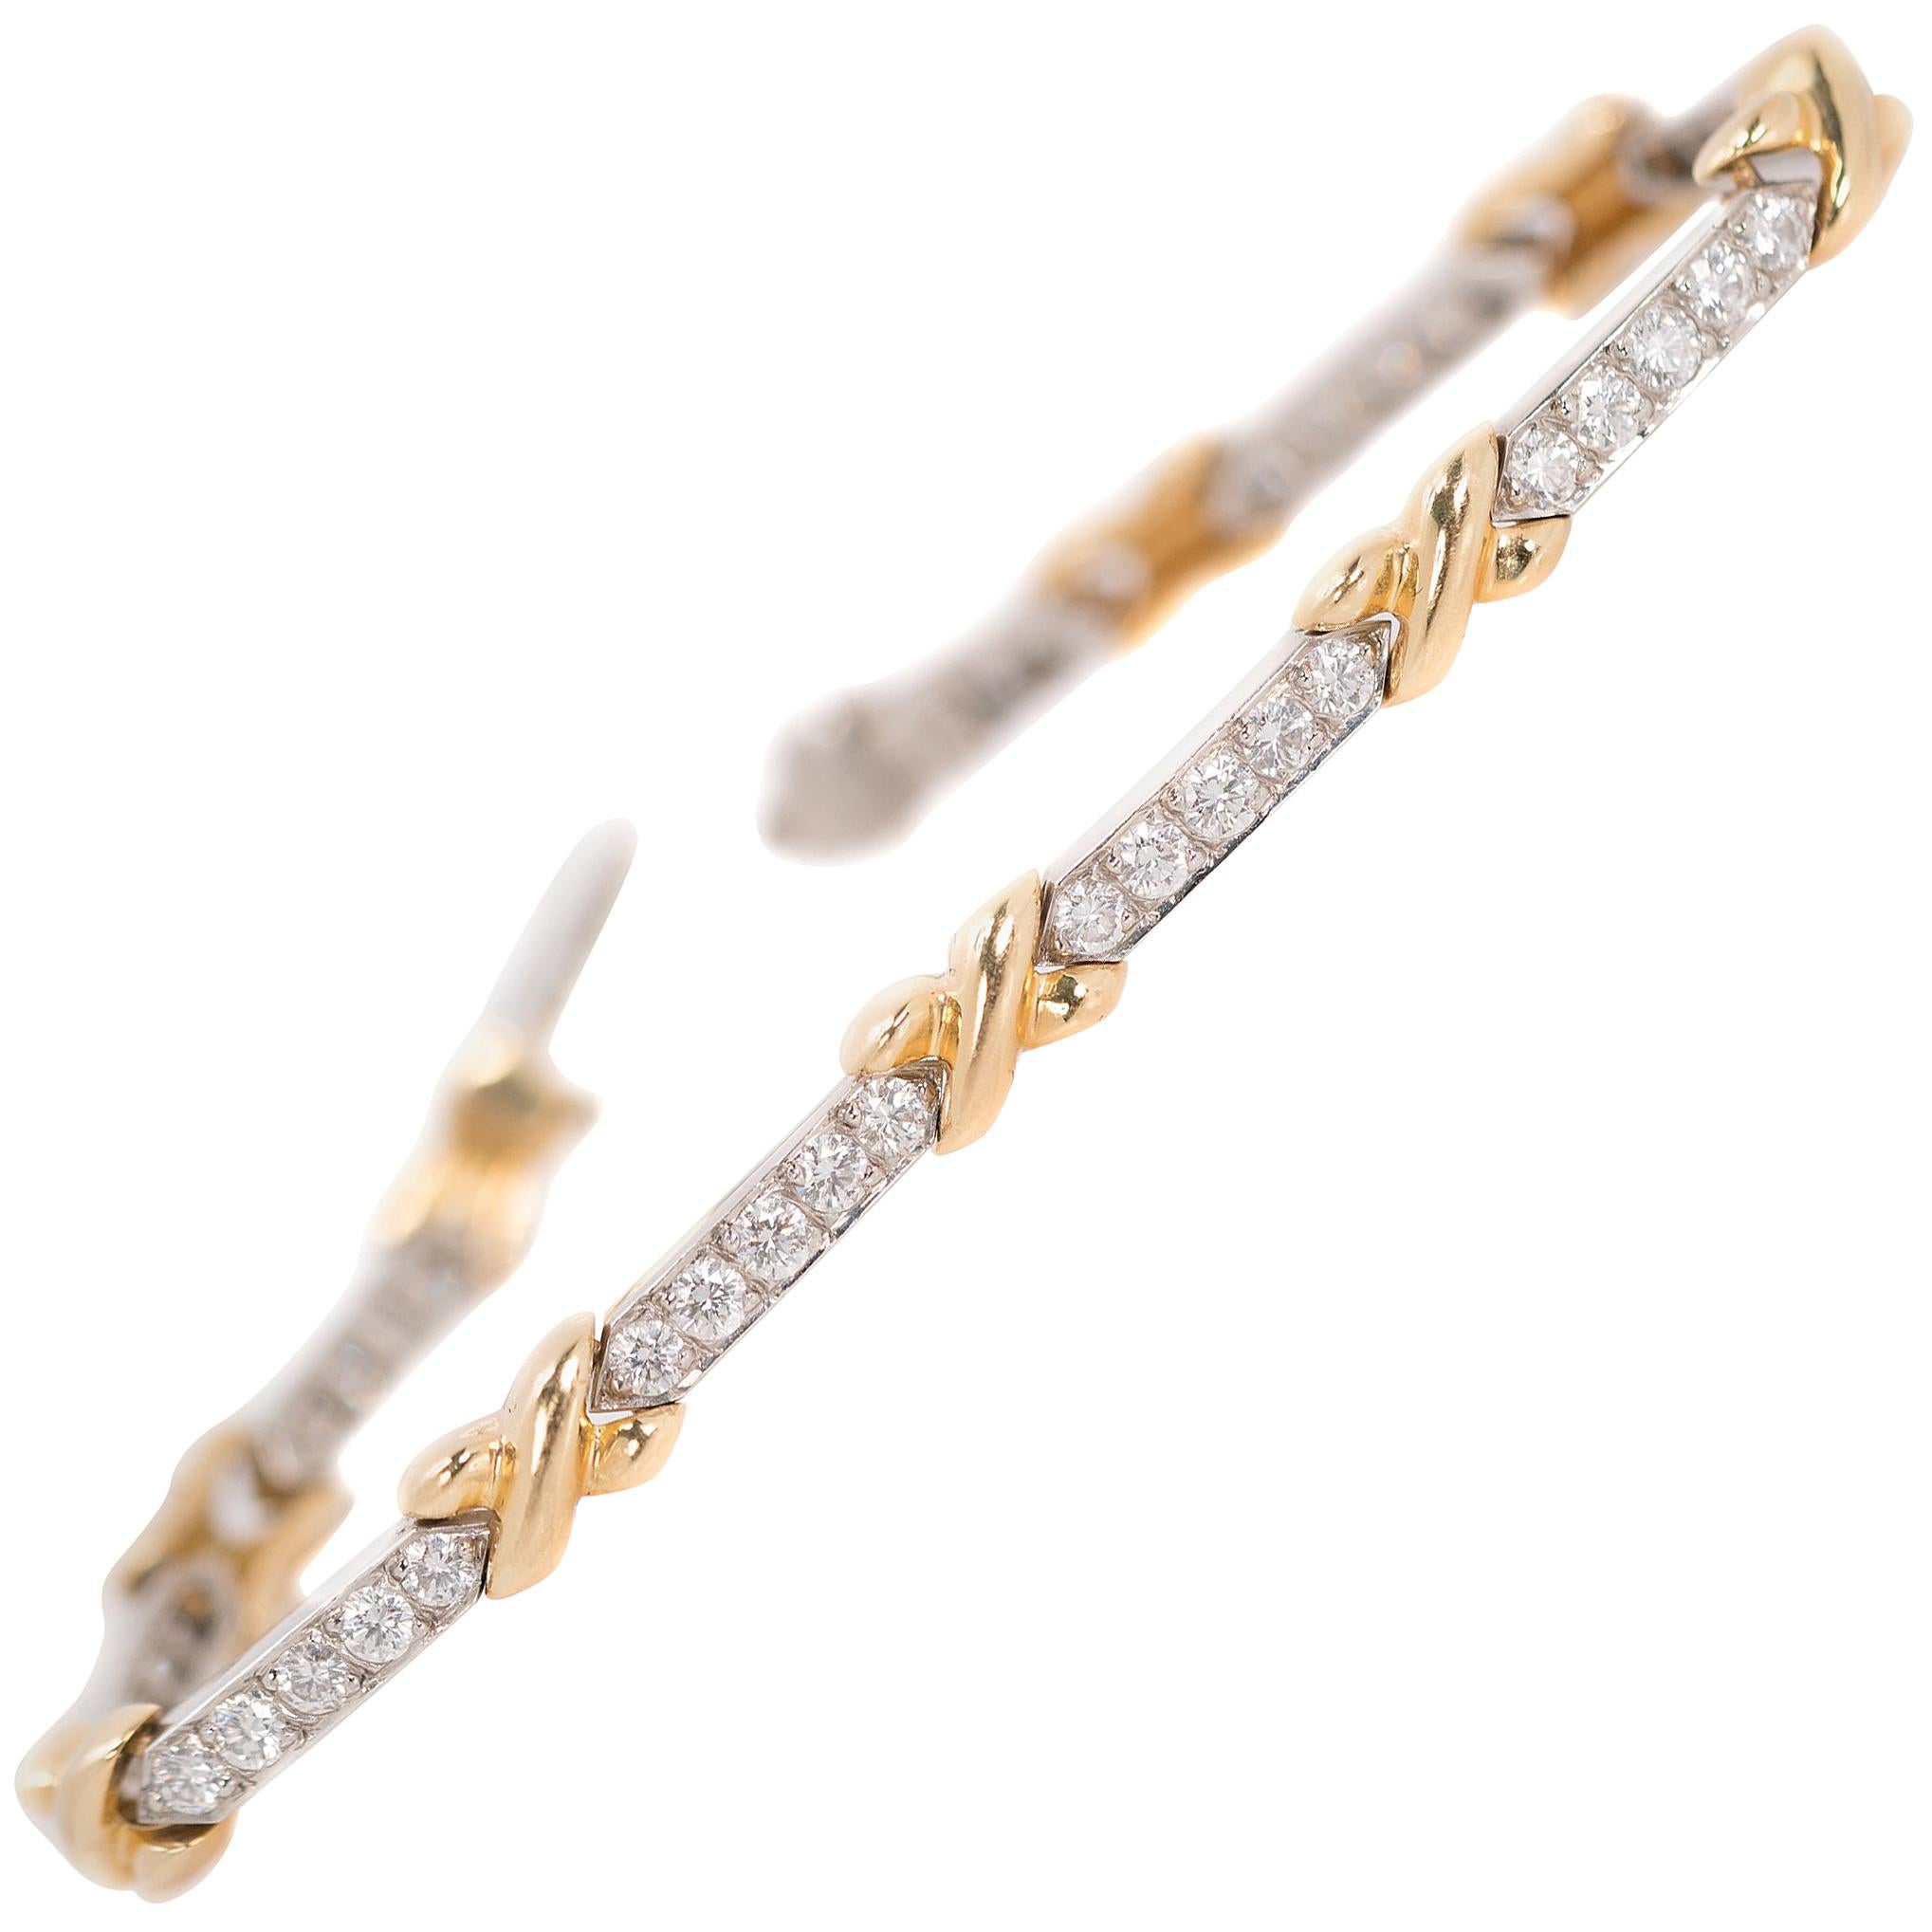 4 Carat Diamond, Platinum and 18 Karat Yellow Gold Link Bracelet